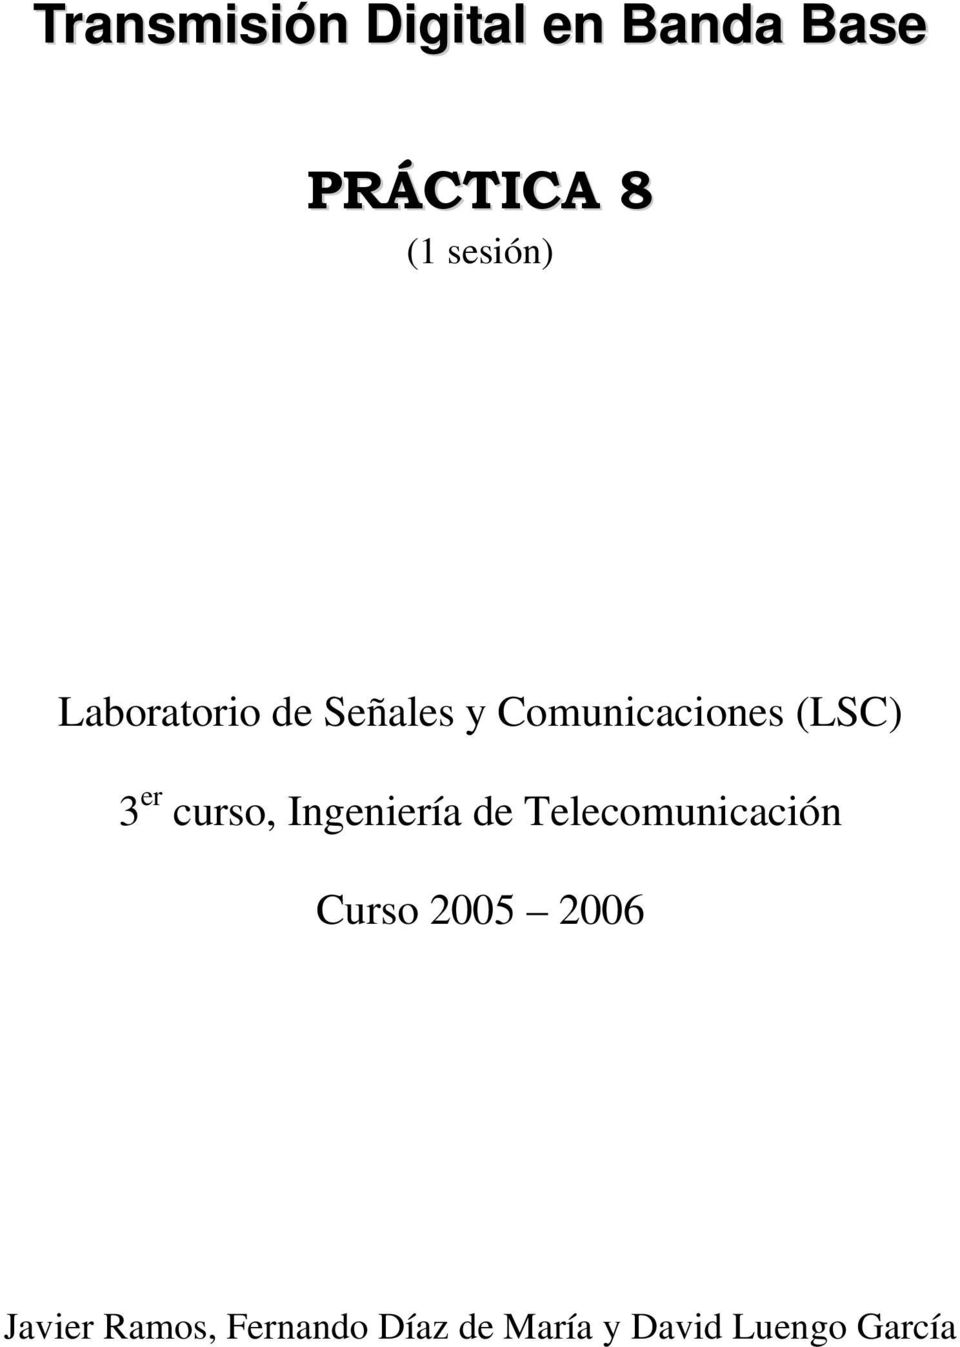 er curso, Ingeniería Telecomunicación Curso 2005